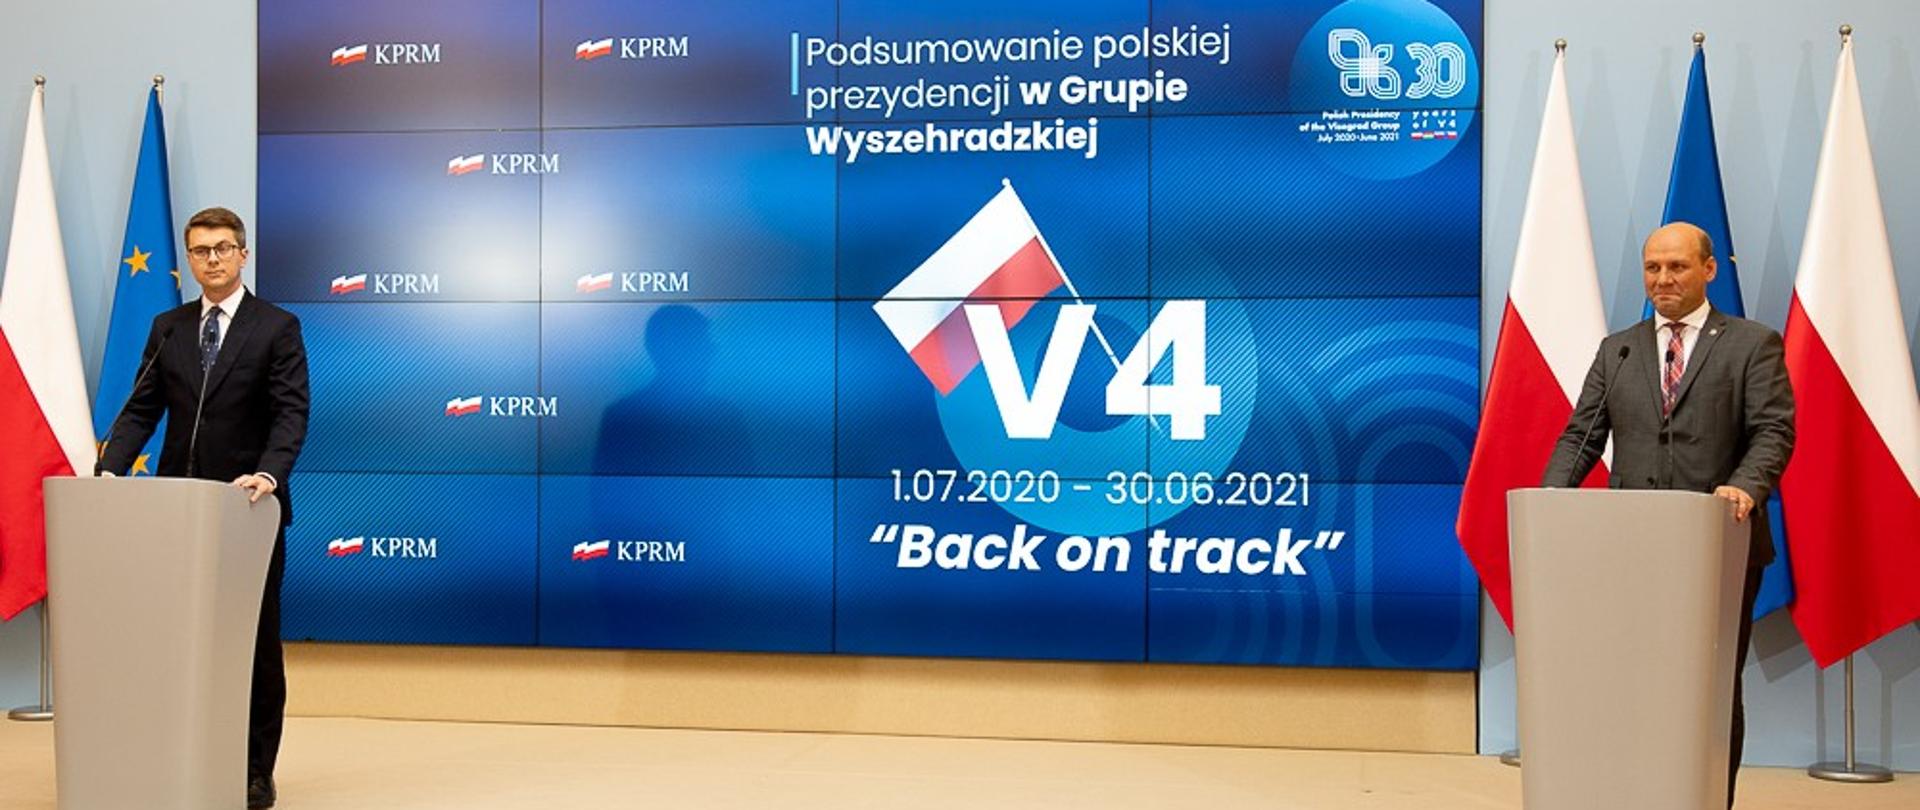 Wiceminister Szymon Szynkowski vel Sęk podsumował polskie przewodnictwo w Grupie Wyszehradzkiej